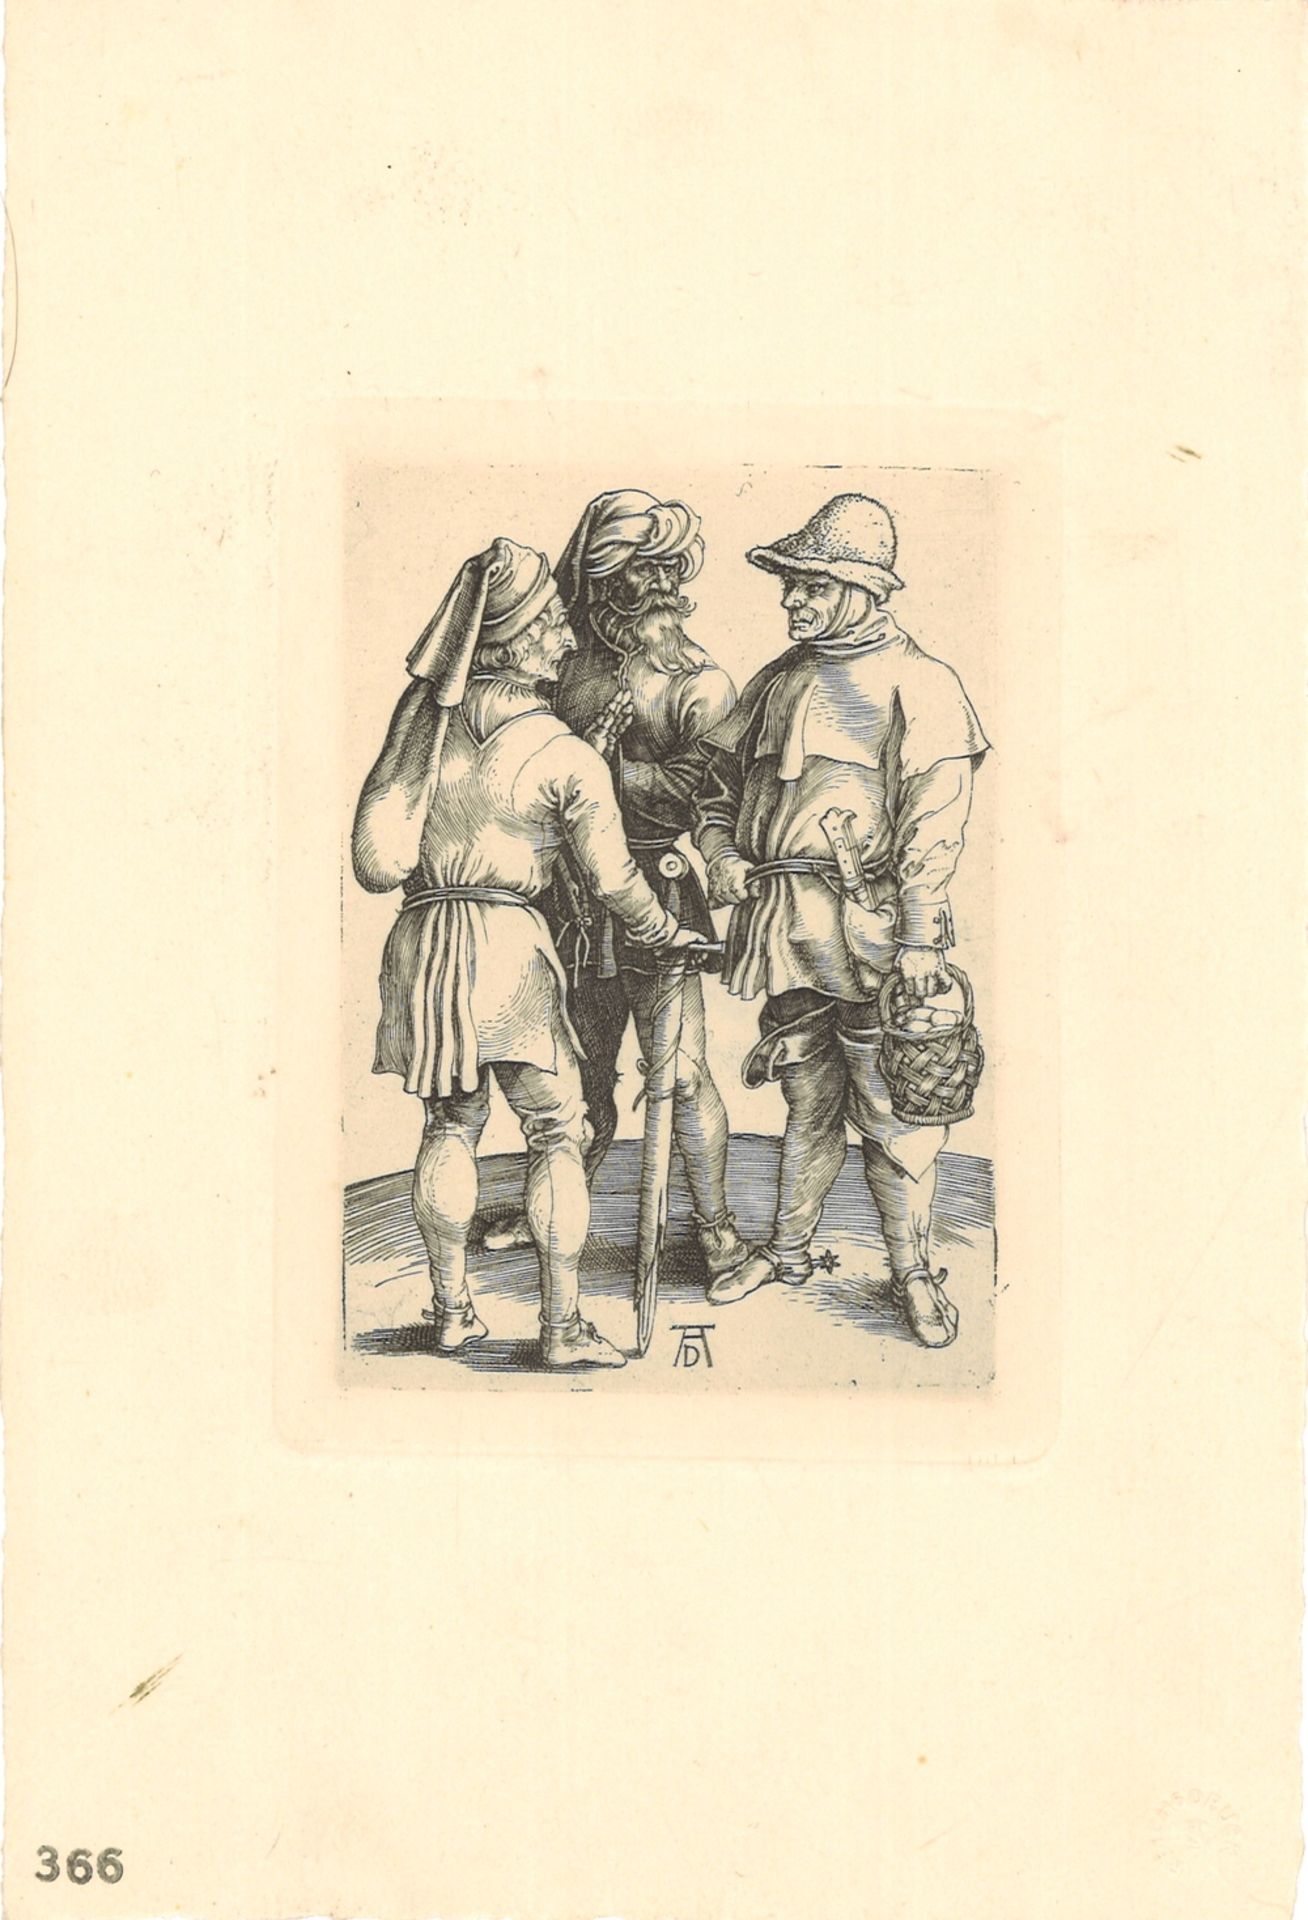 Druckgrafik "Drei Bauern im Gespräch", um 1497, von Albrecht Dürer (1471-1528), Monogramm unten